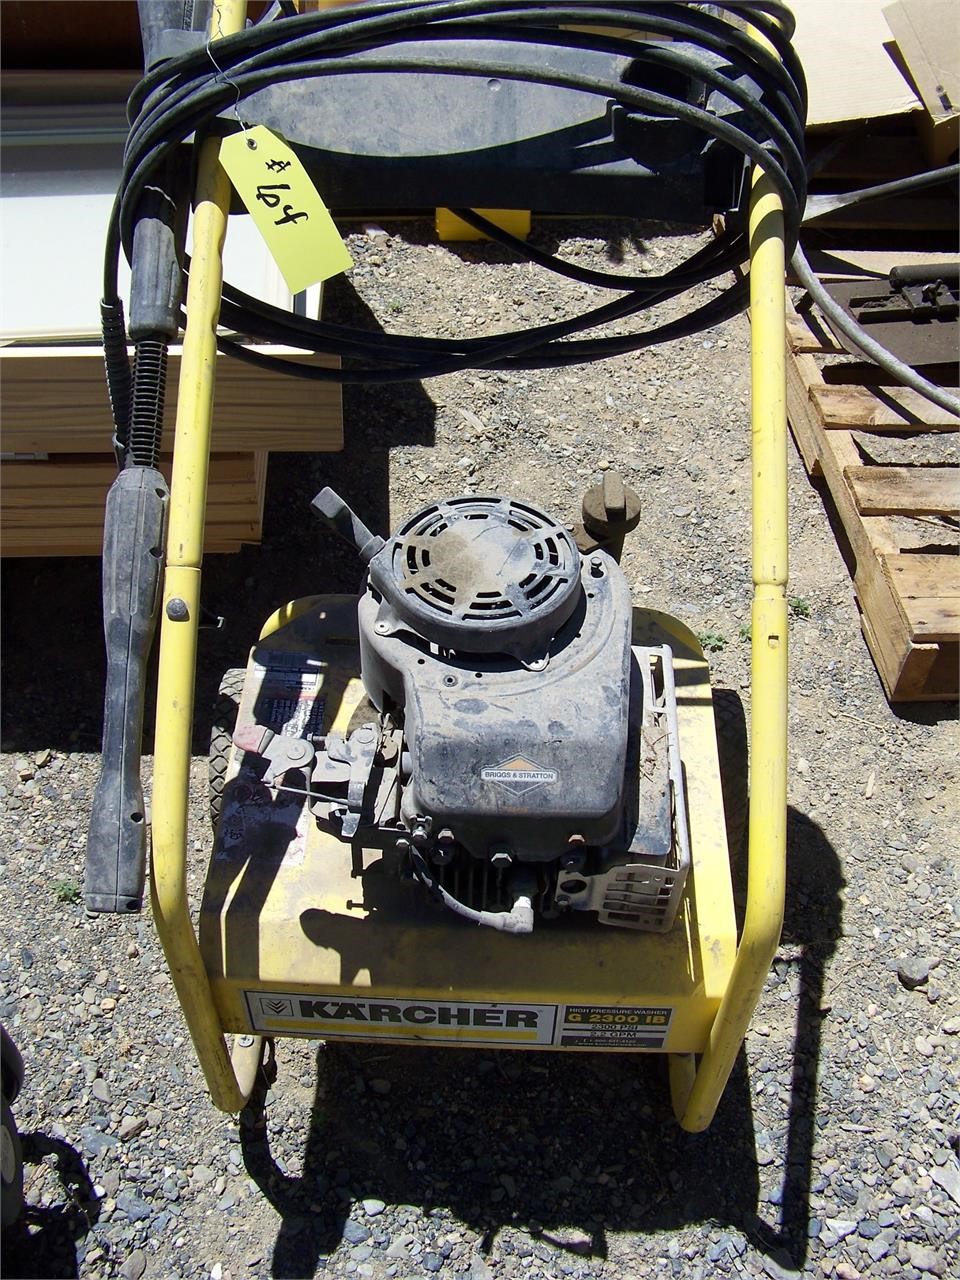 Karcher Pressure Washer G2300